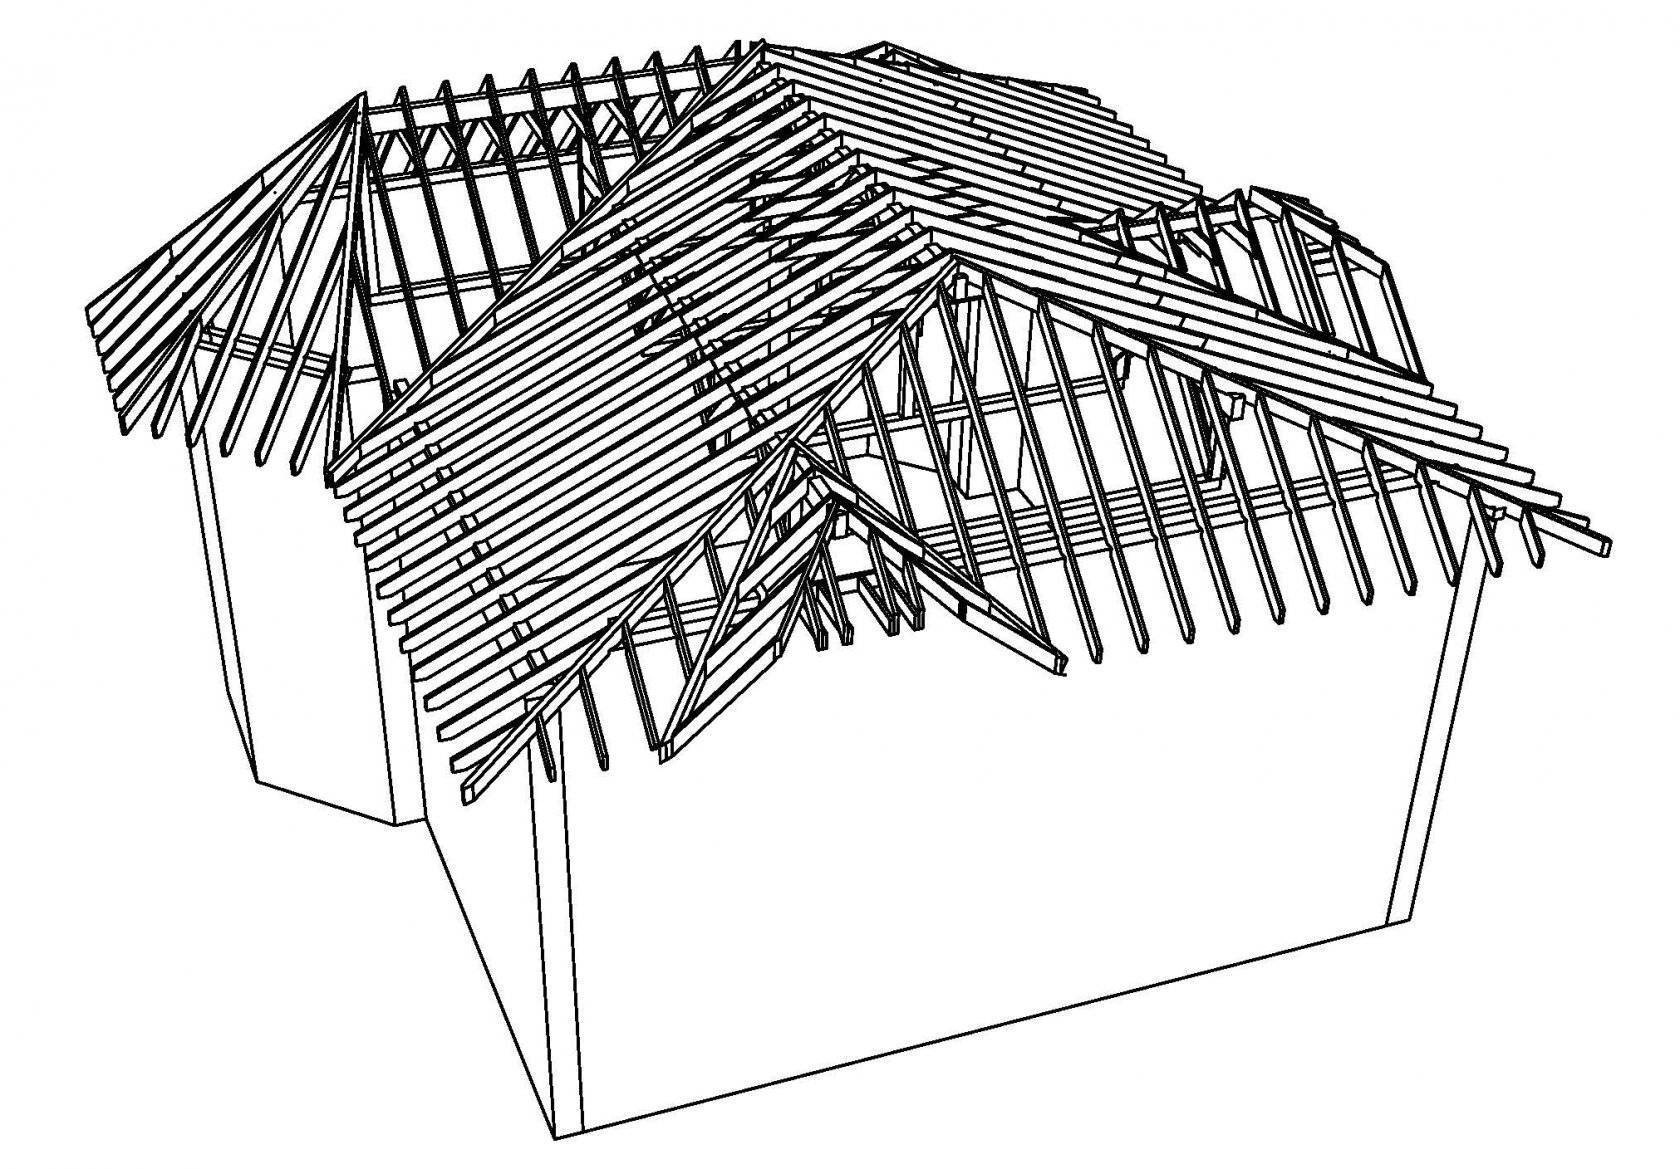 Многощипцовая крыша частного дома: стропильная система + фото схем и чертежей устройства стропил